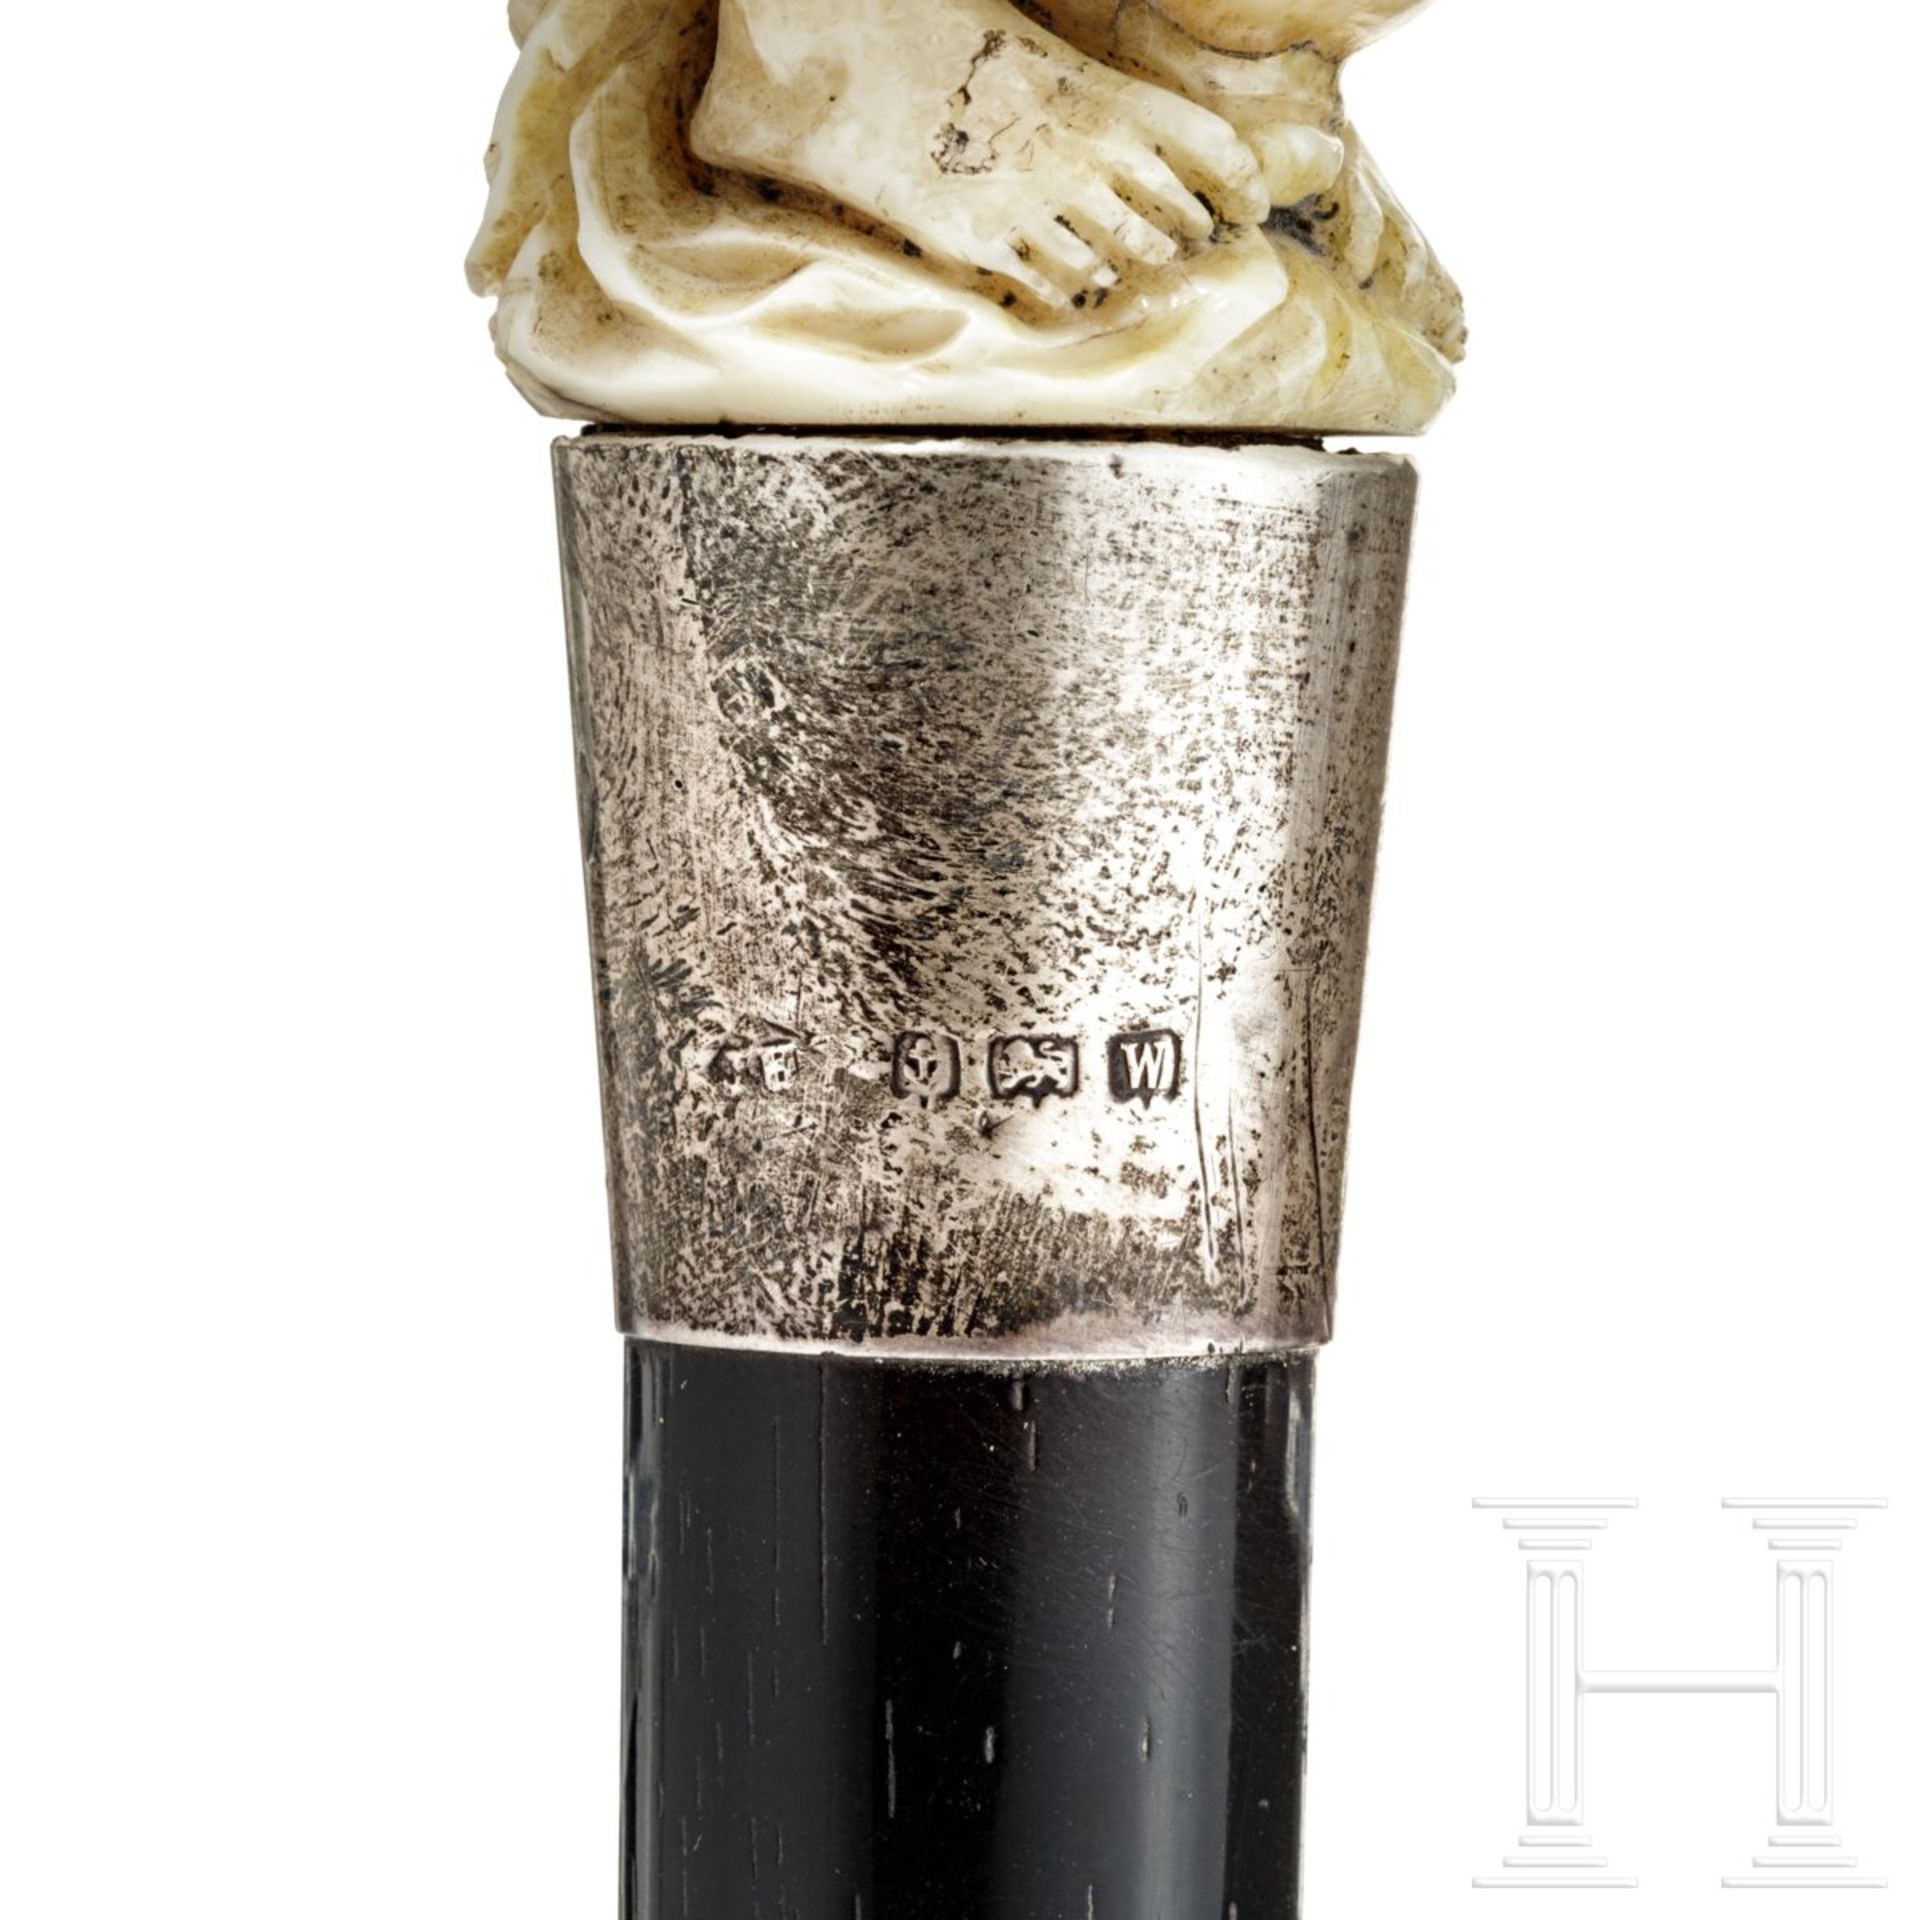 Erotischer Gehstock, England, spätes 19. Jhdt.Knauf aus Elfenbein mit leichter Farbfassung in Form - Bild 4 aus 5